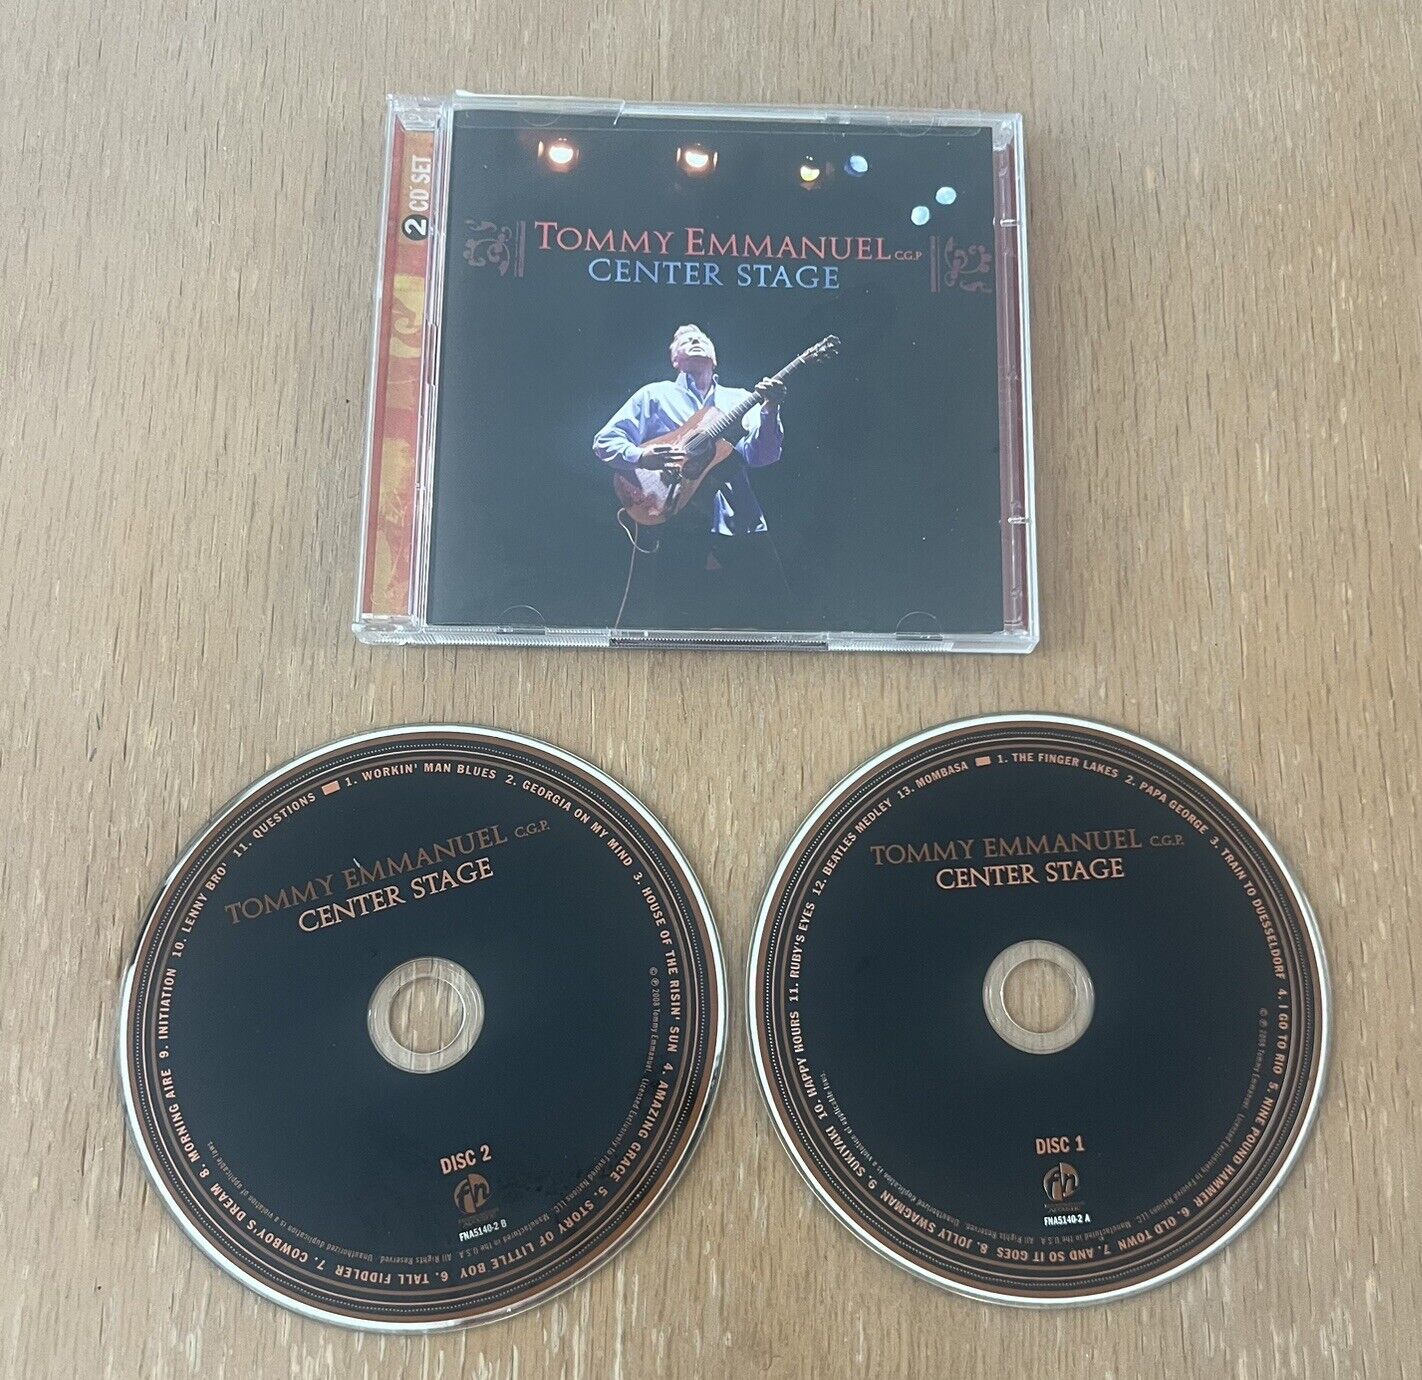 TOMMY EMMANUEL - Center Stage - 2 CD